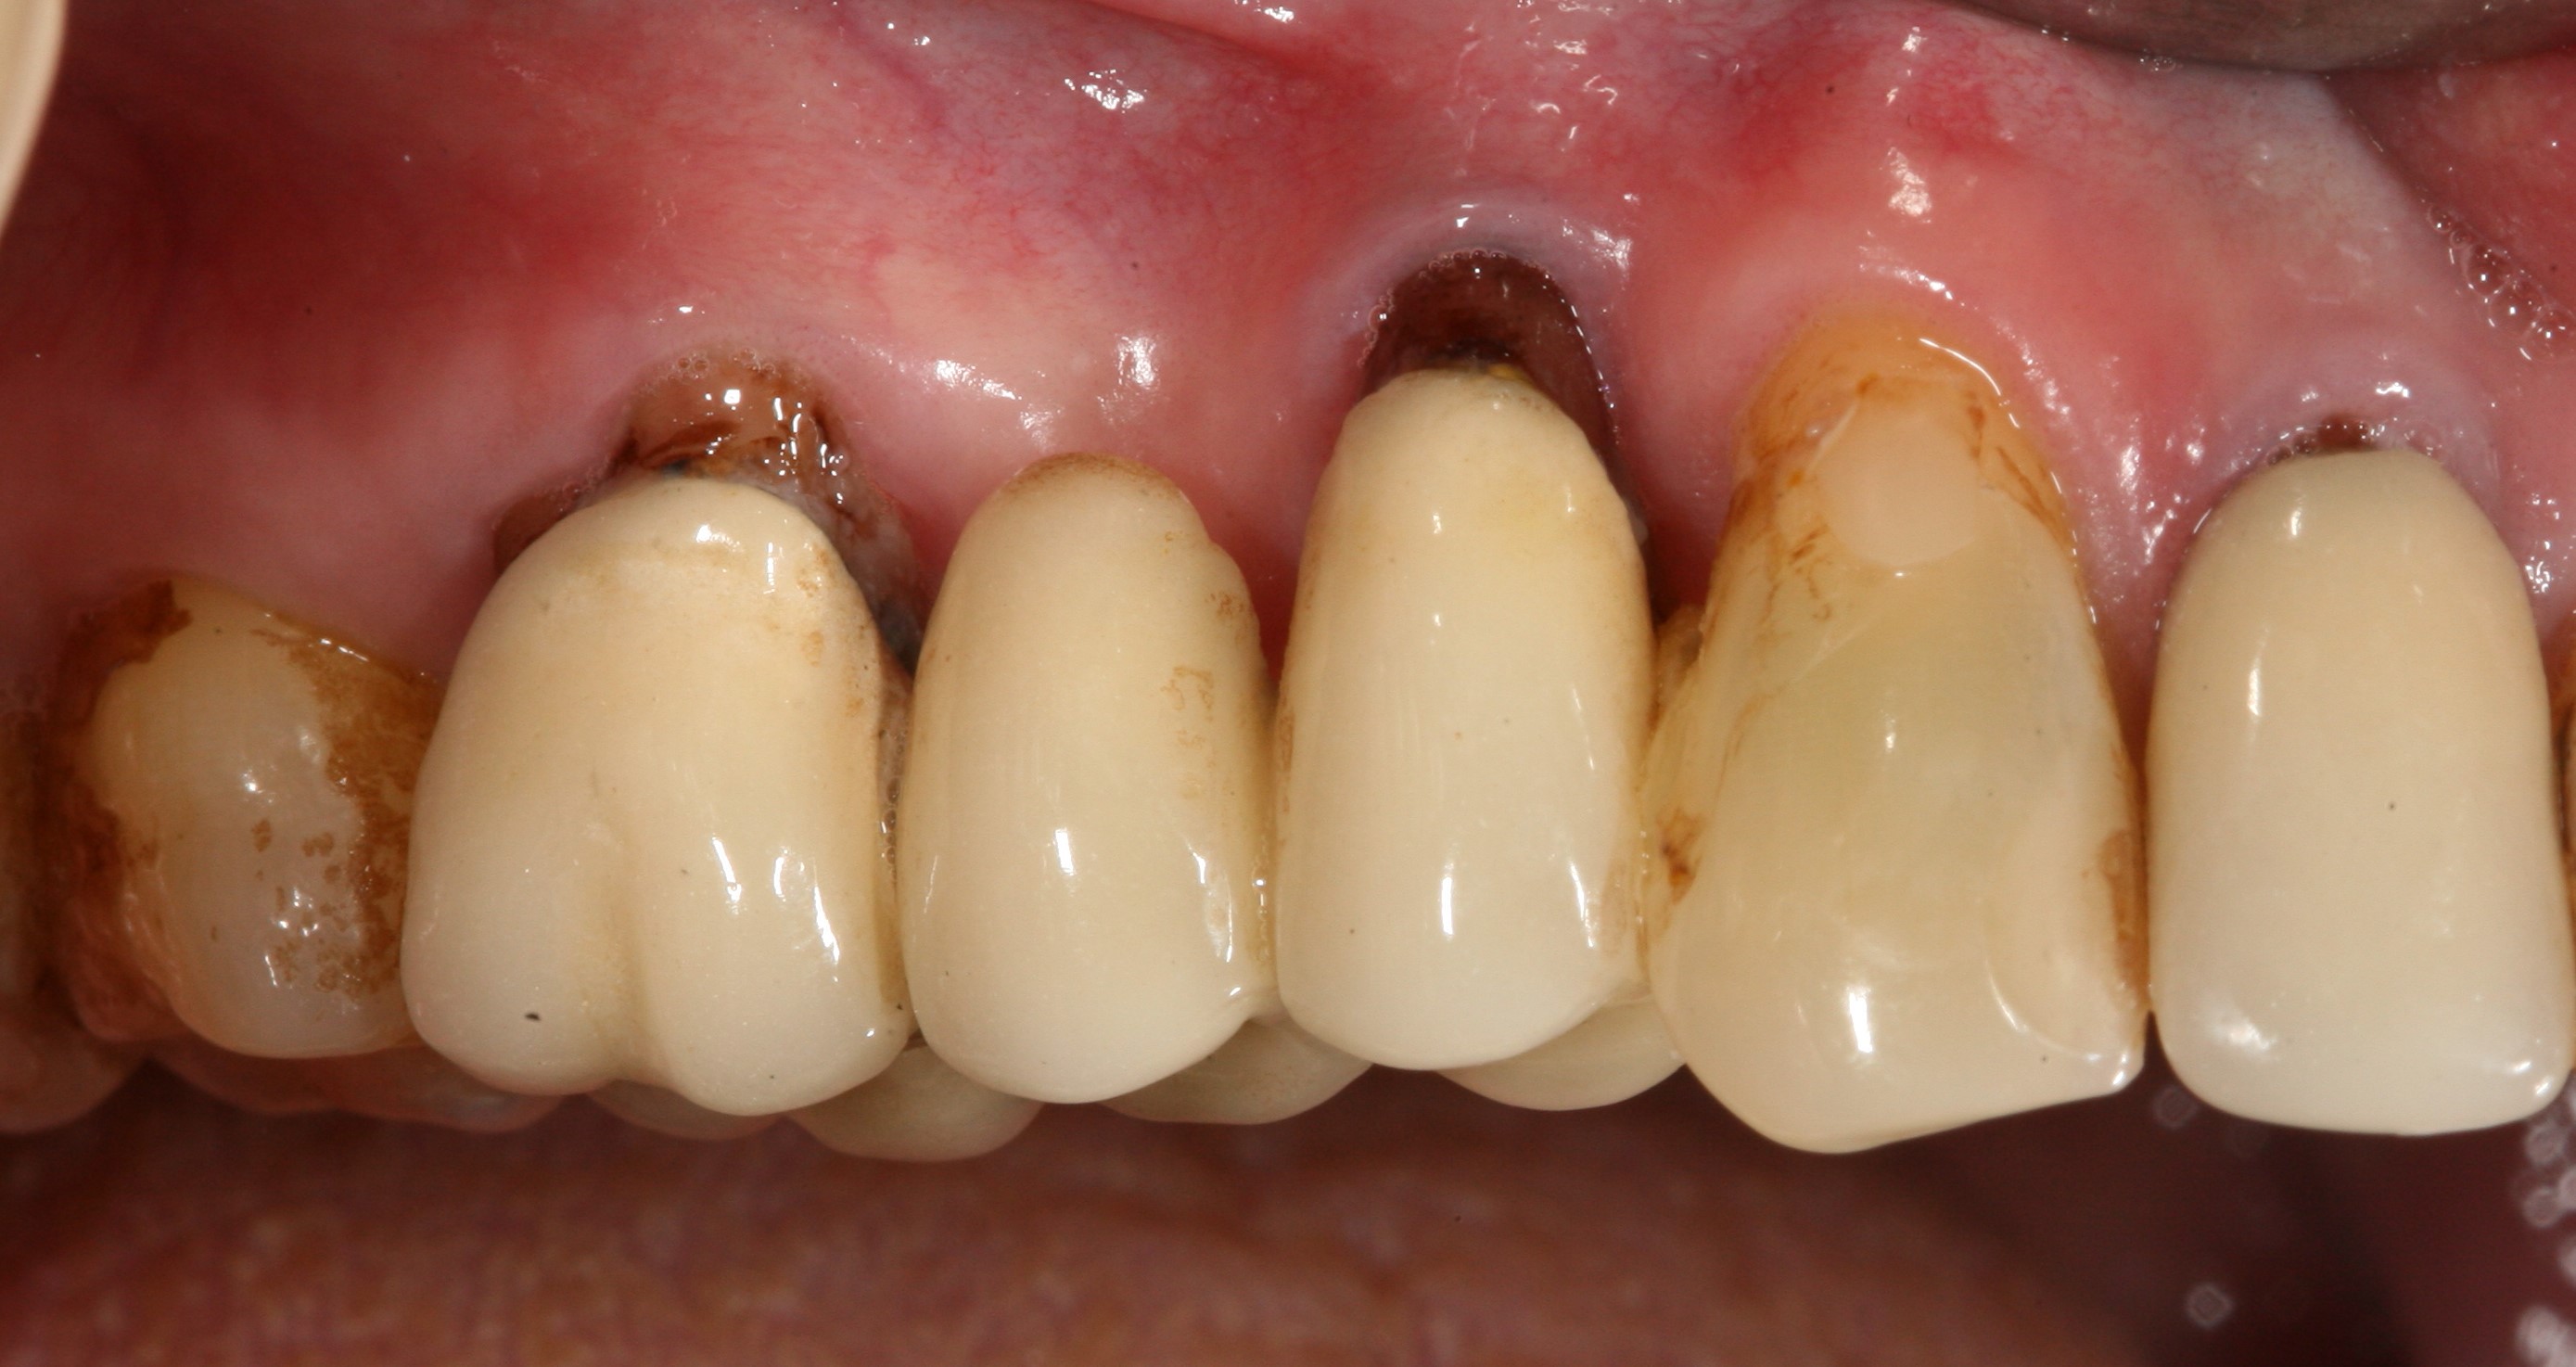 Снятие зубной коронки для лечения зуба или замены - без боли, низкие цены